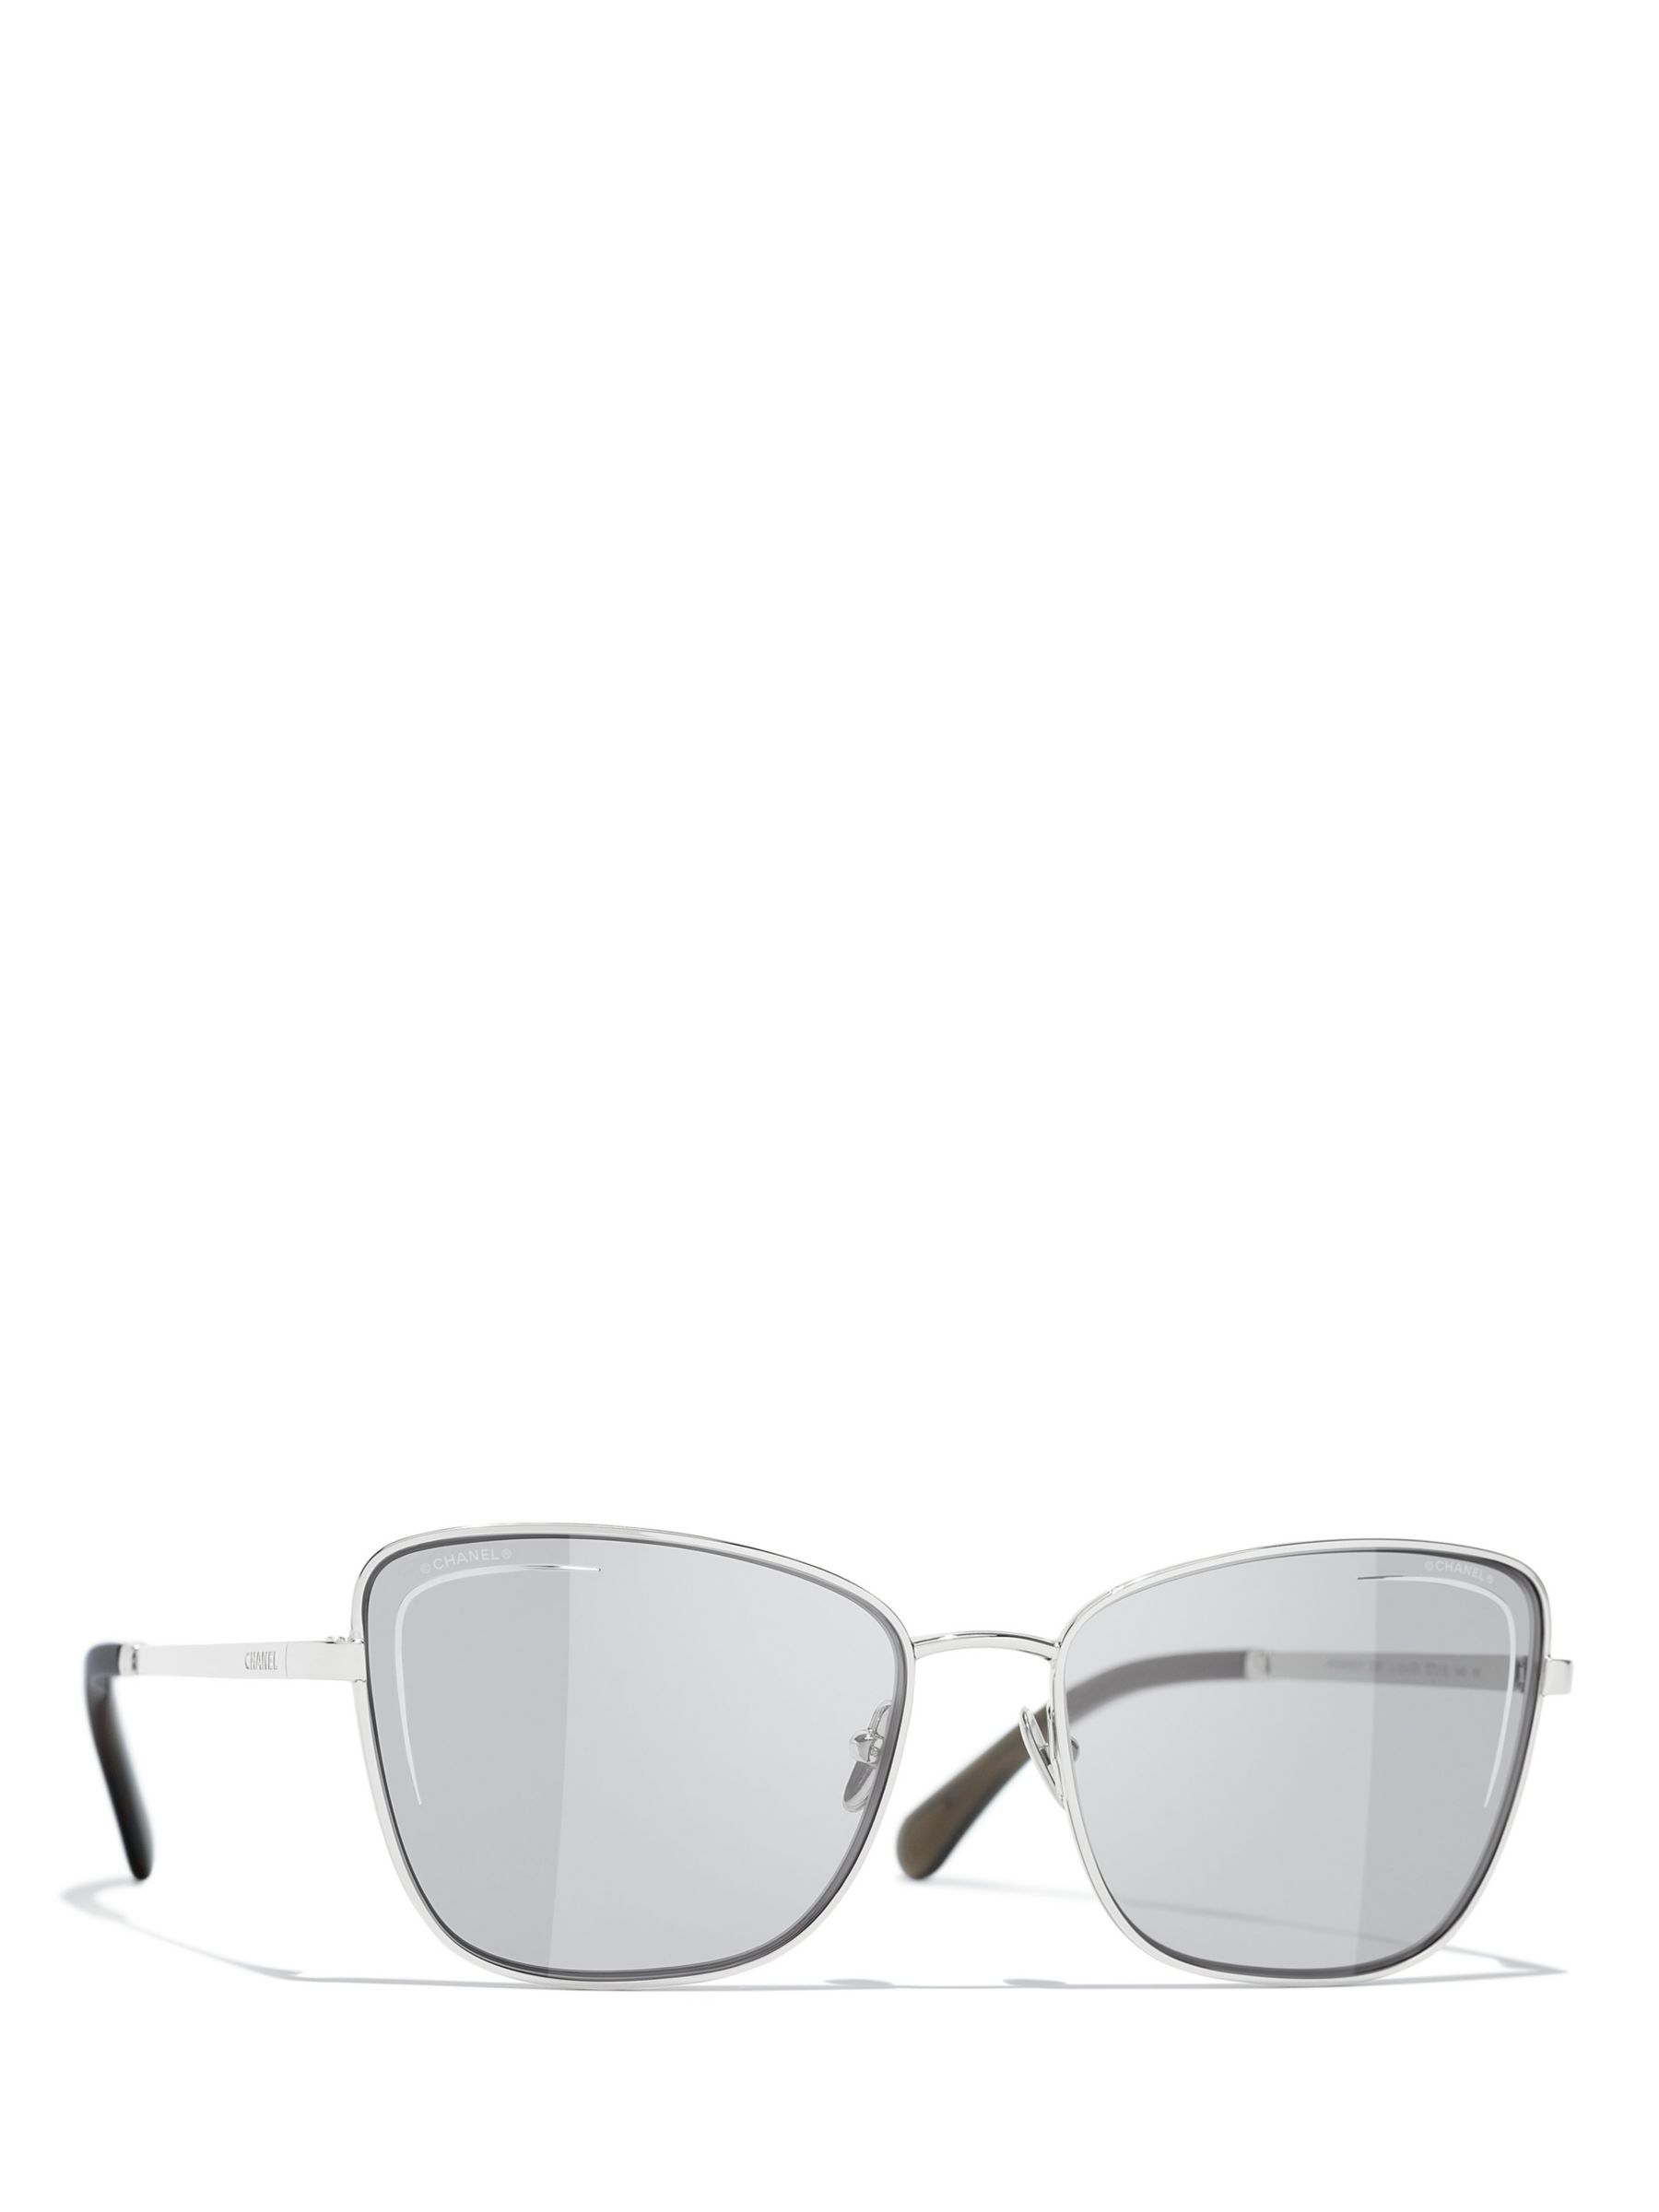 CHANEL Women's Silver Sunglasses